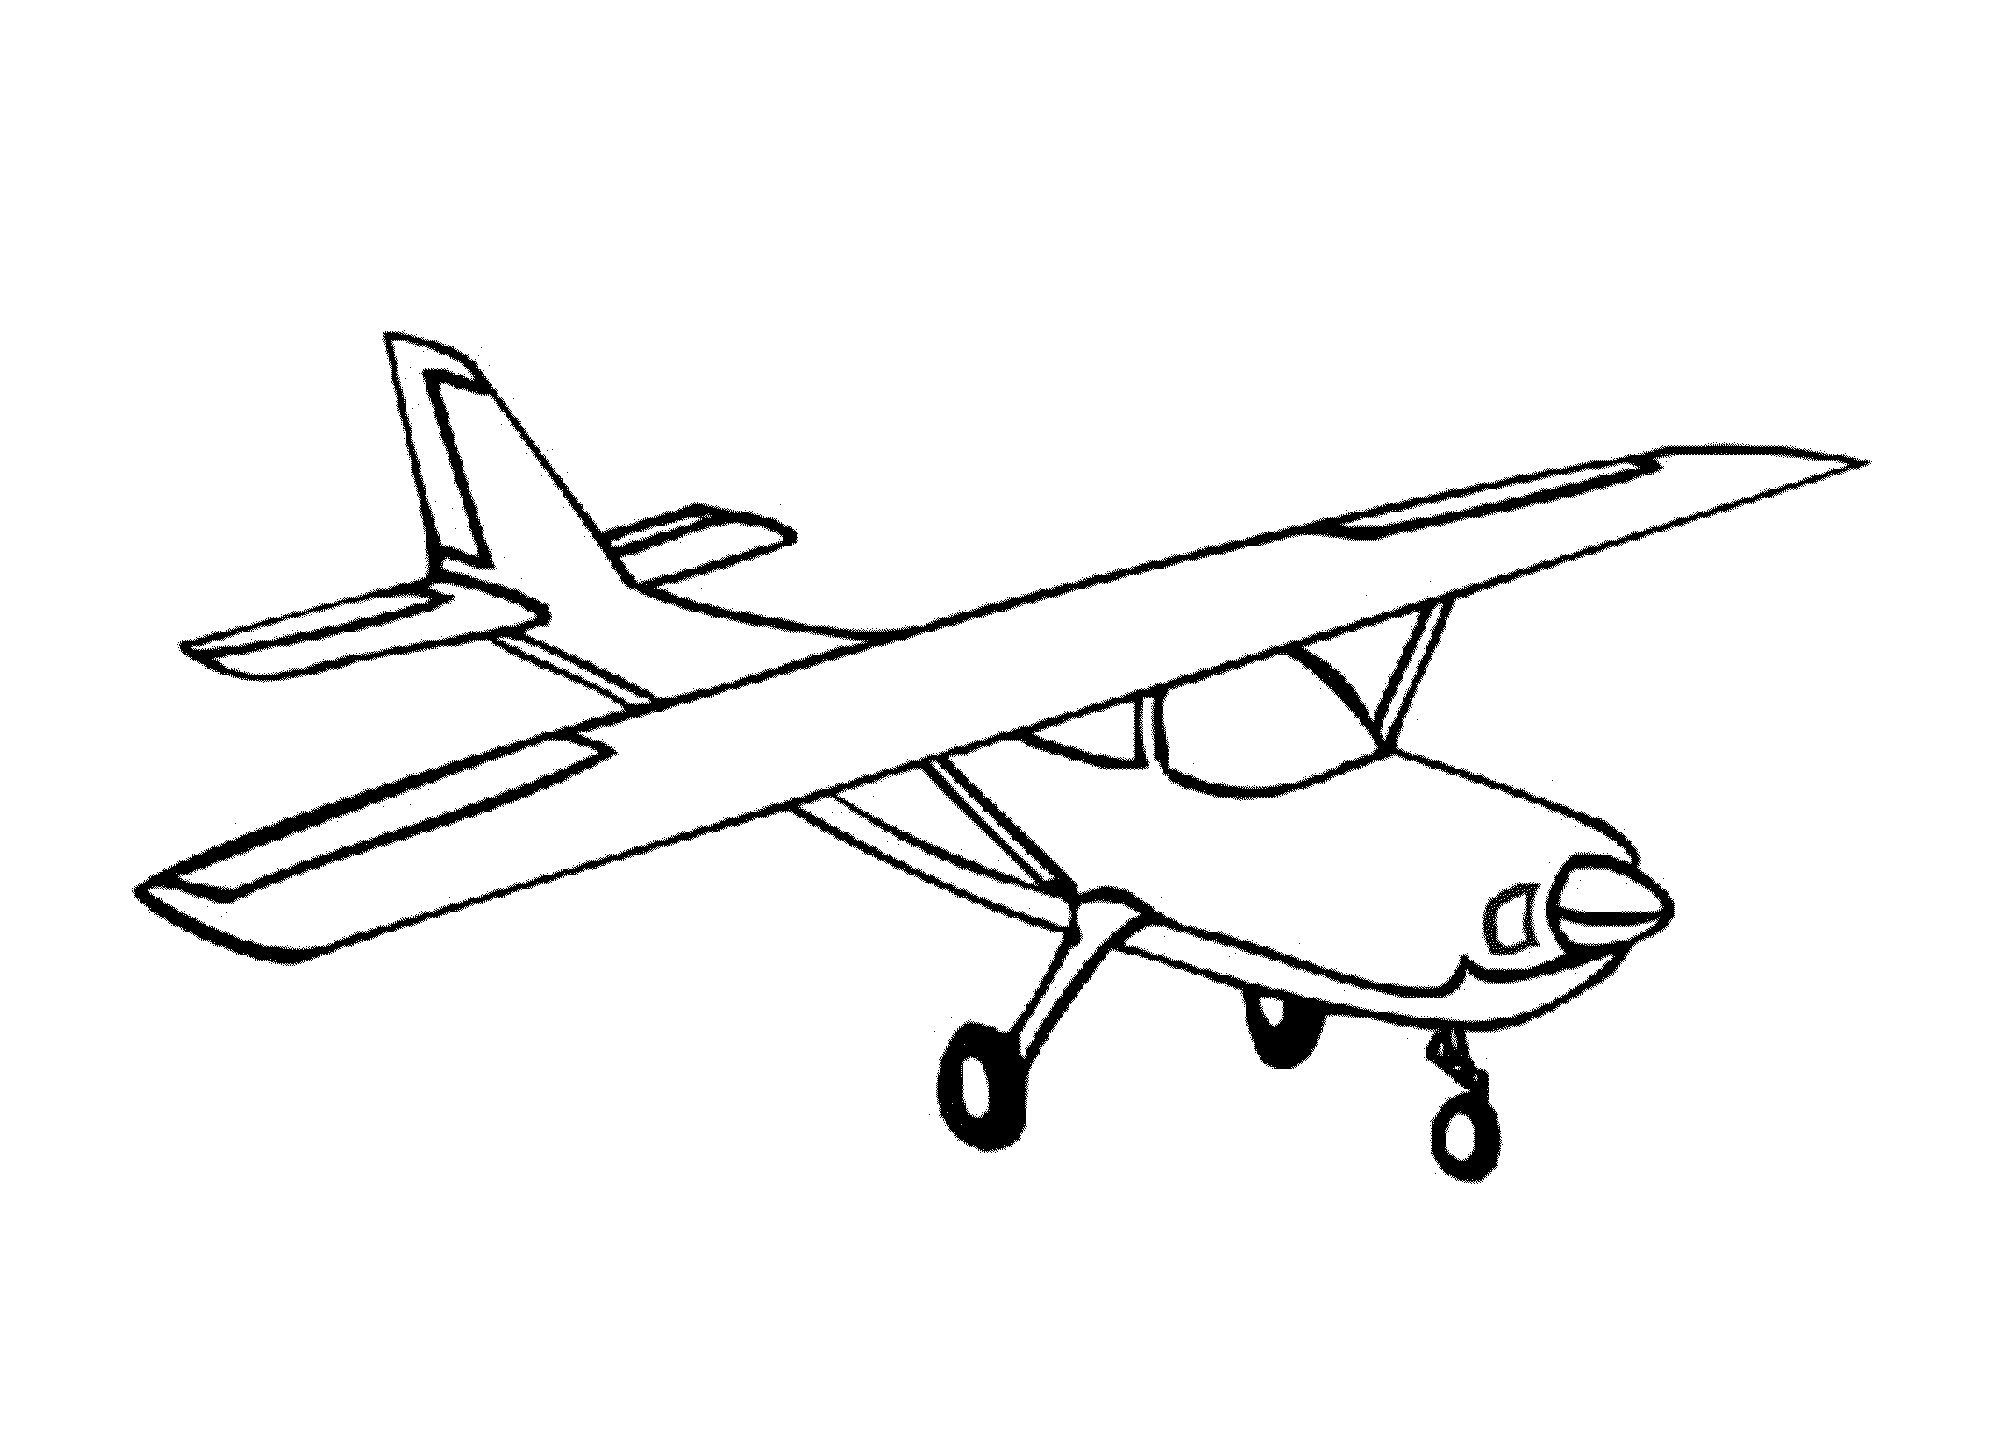 Simple drawings of airplanes step by step - gamesklo